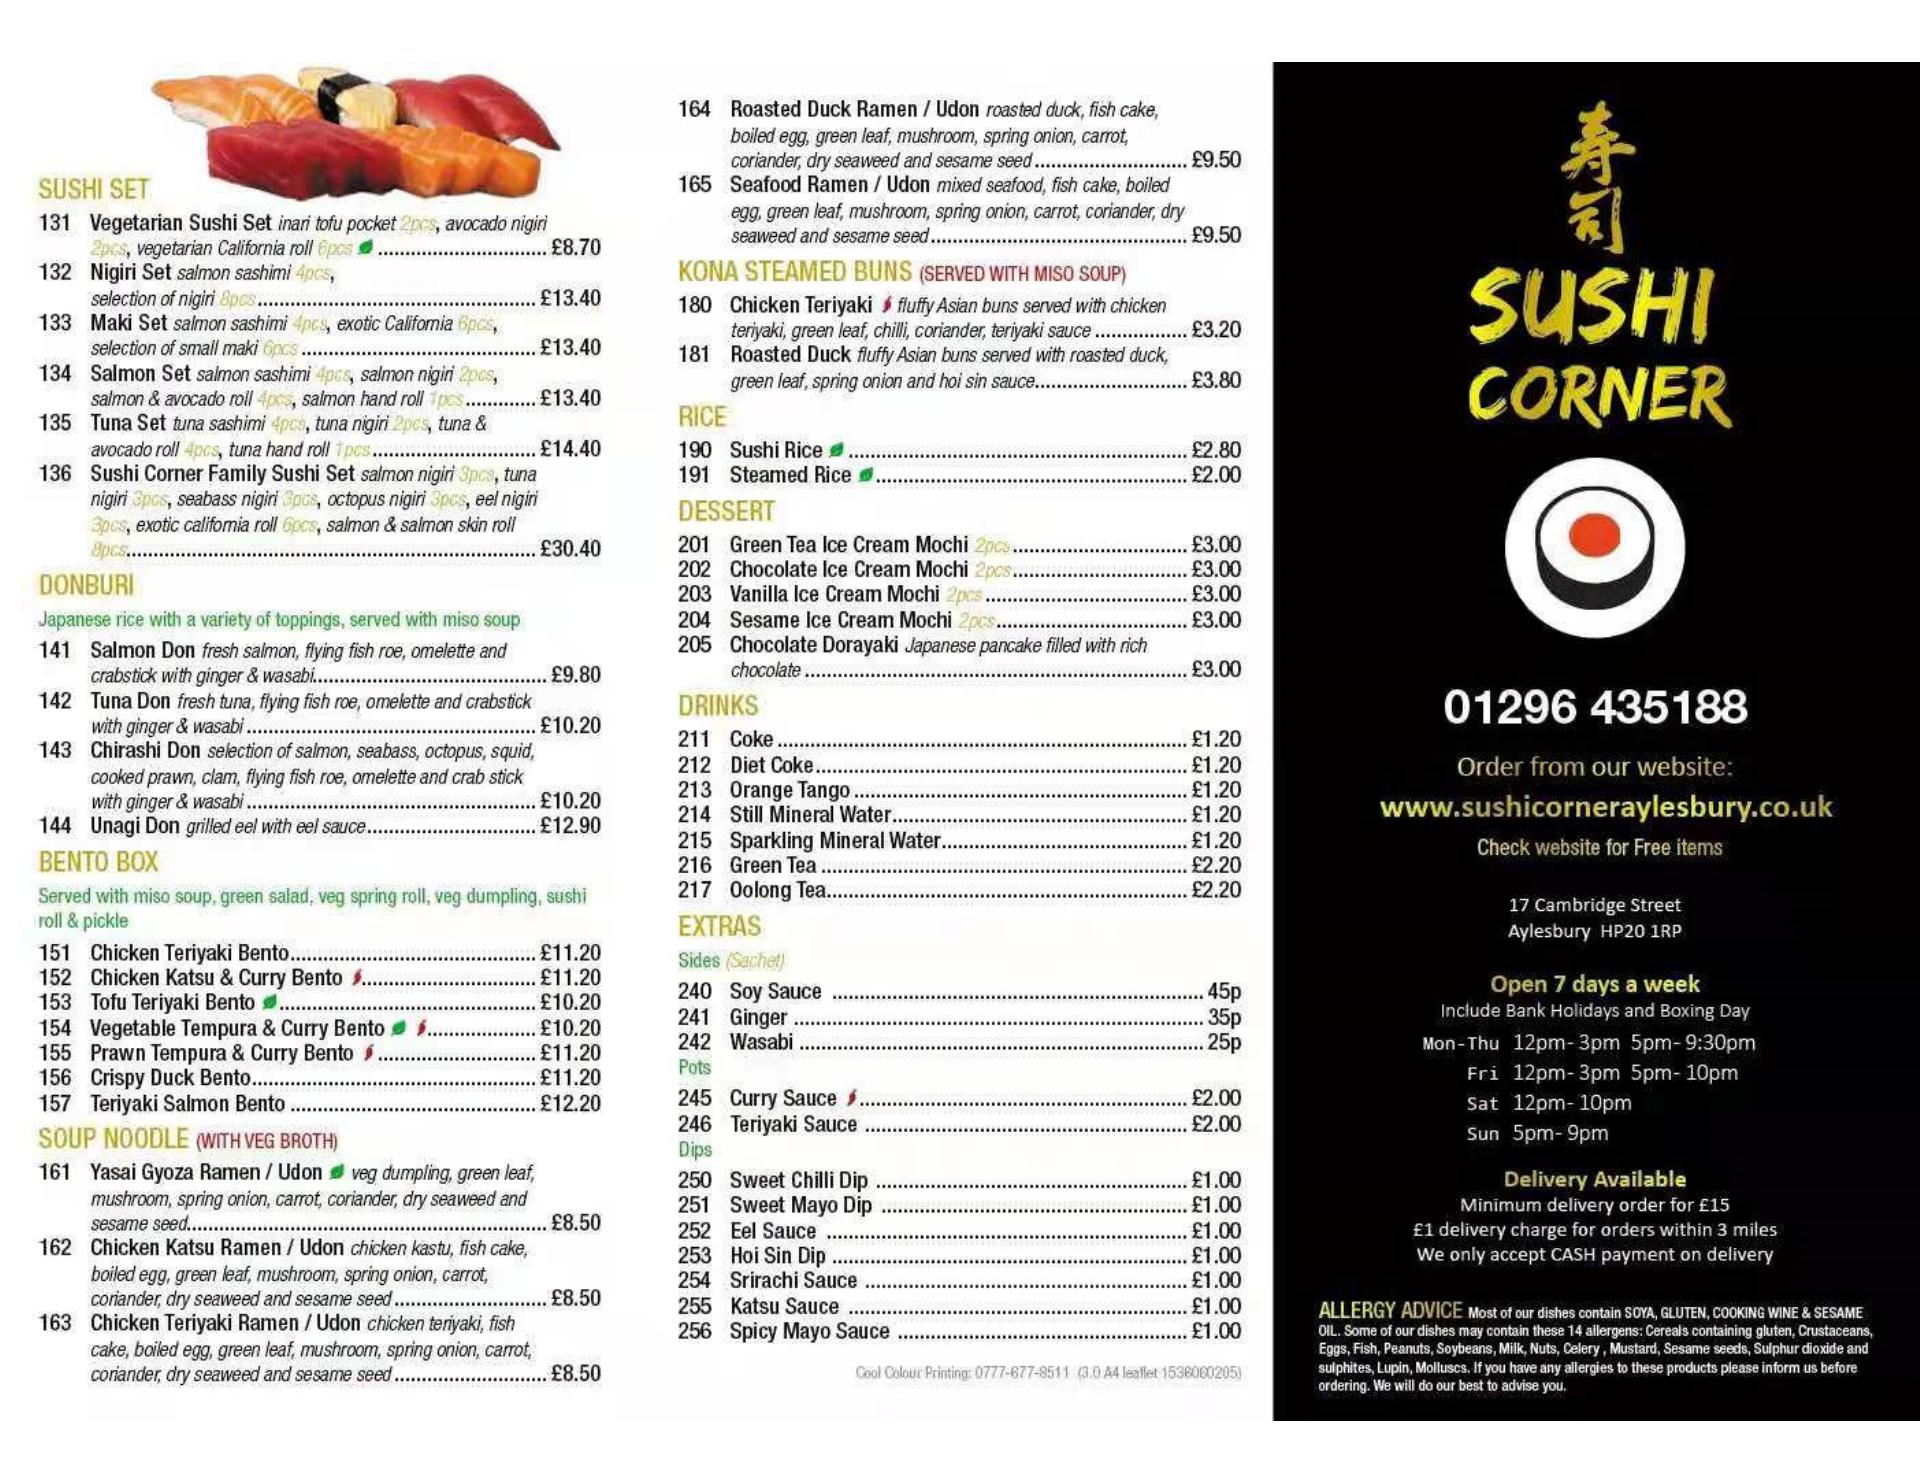 Sushi Corner aylesbury